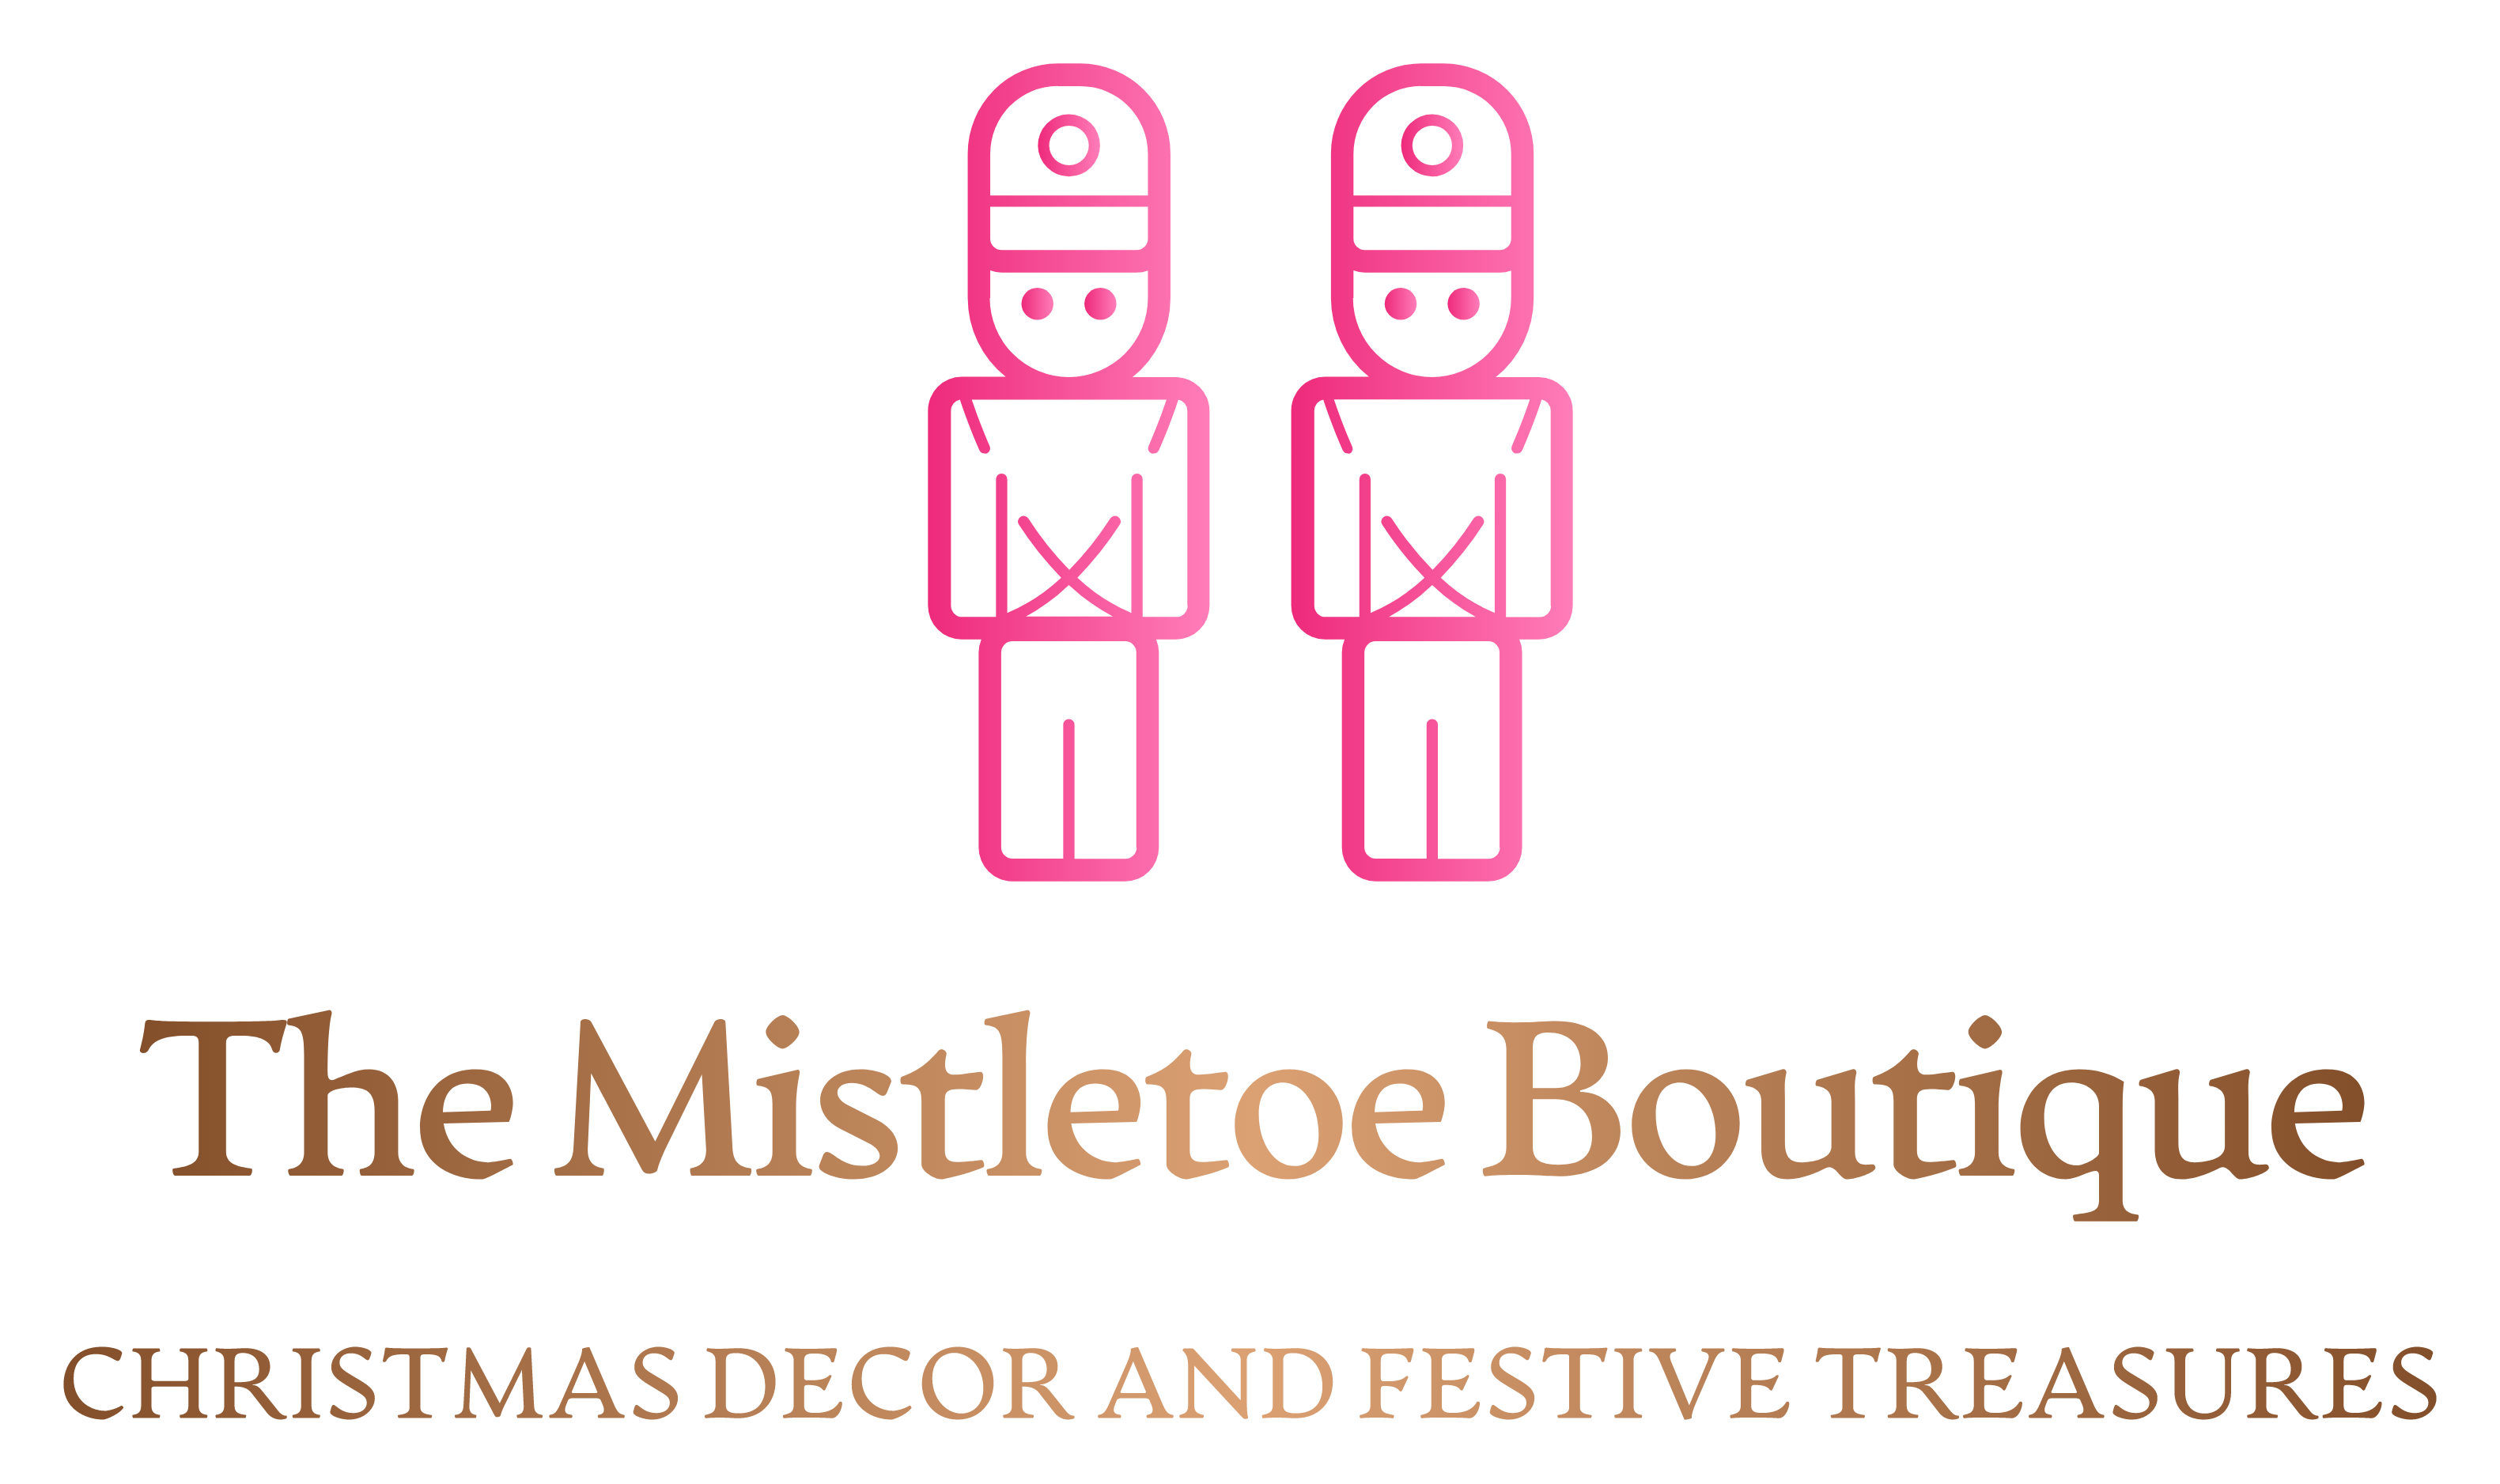 The Mistletoe Boutique